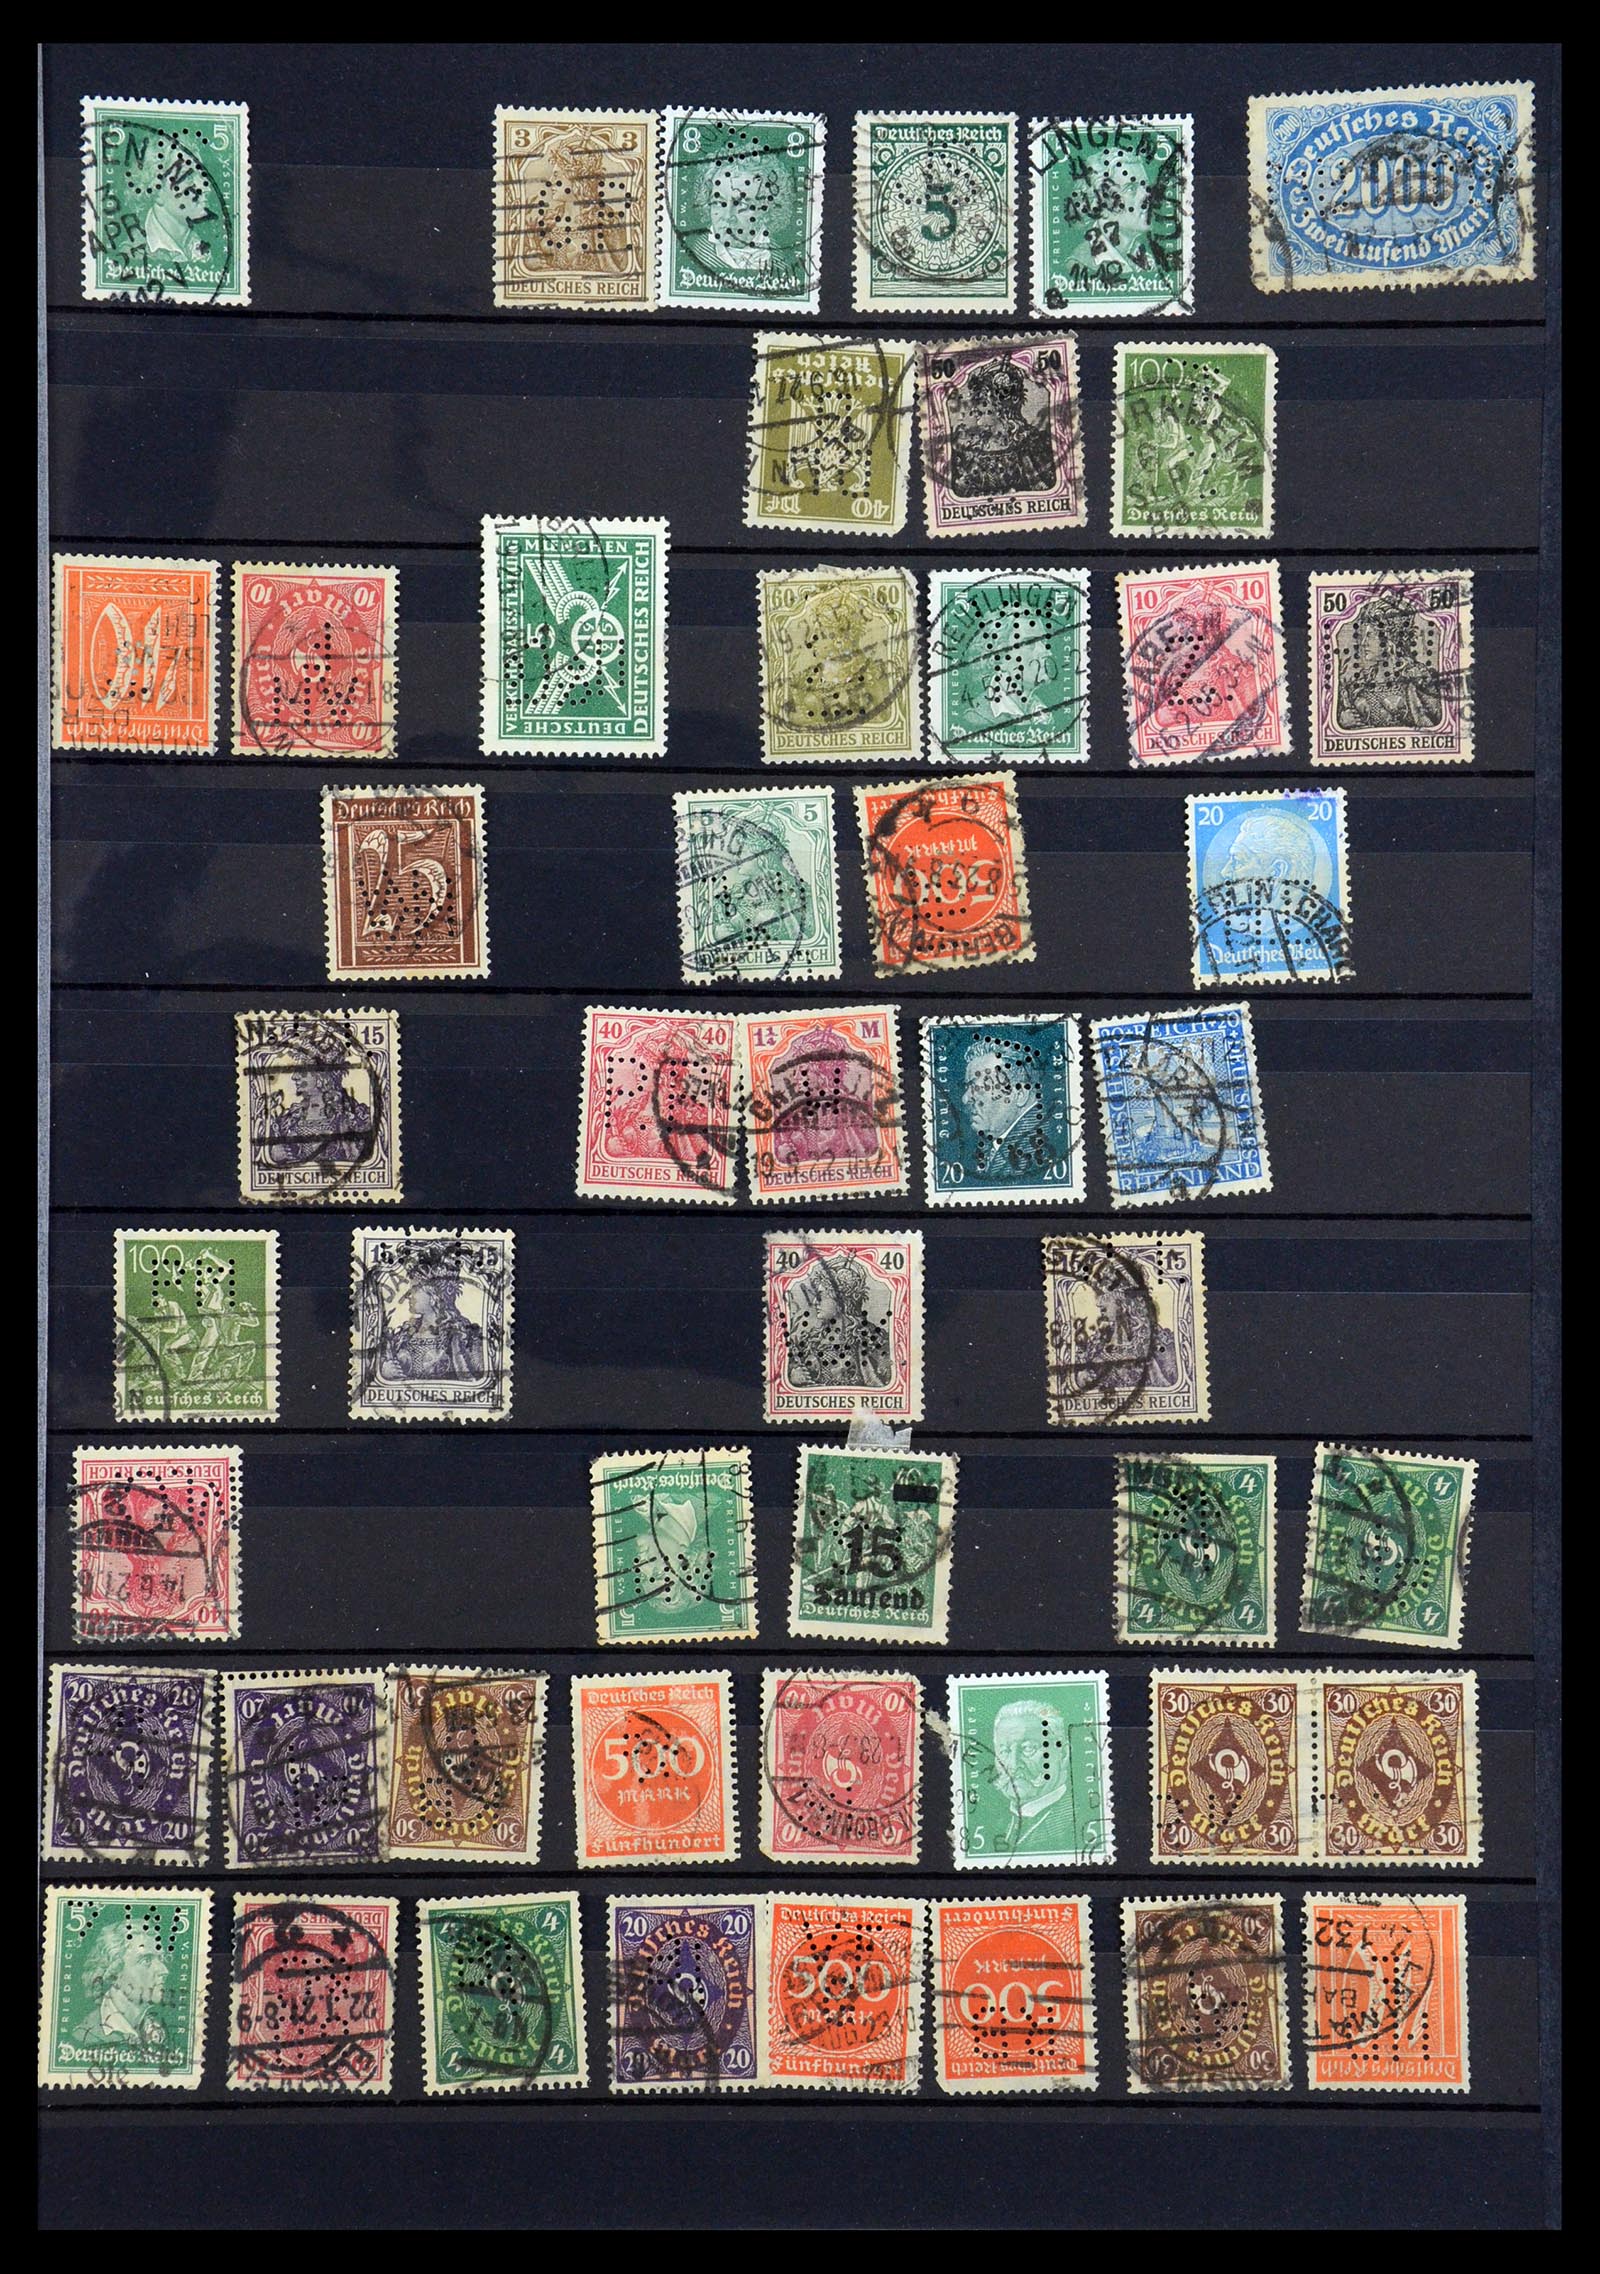 35183 011 - Stamp Collection 35183 German Reich perfins 1880-1945.